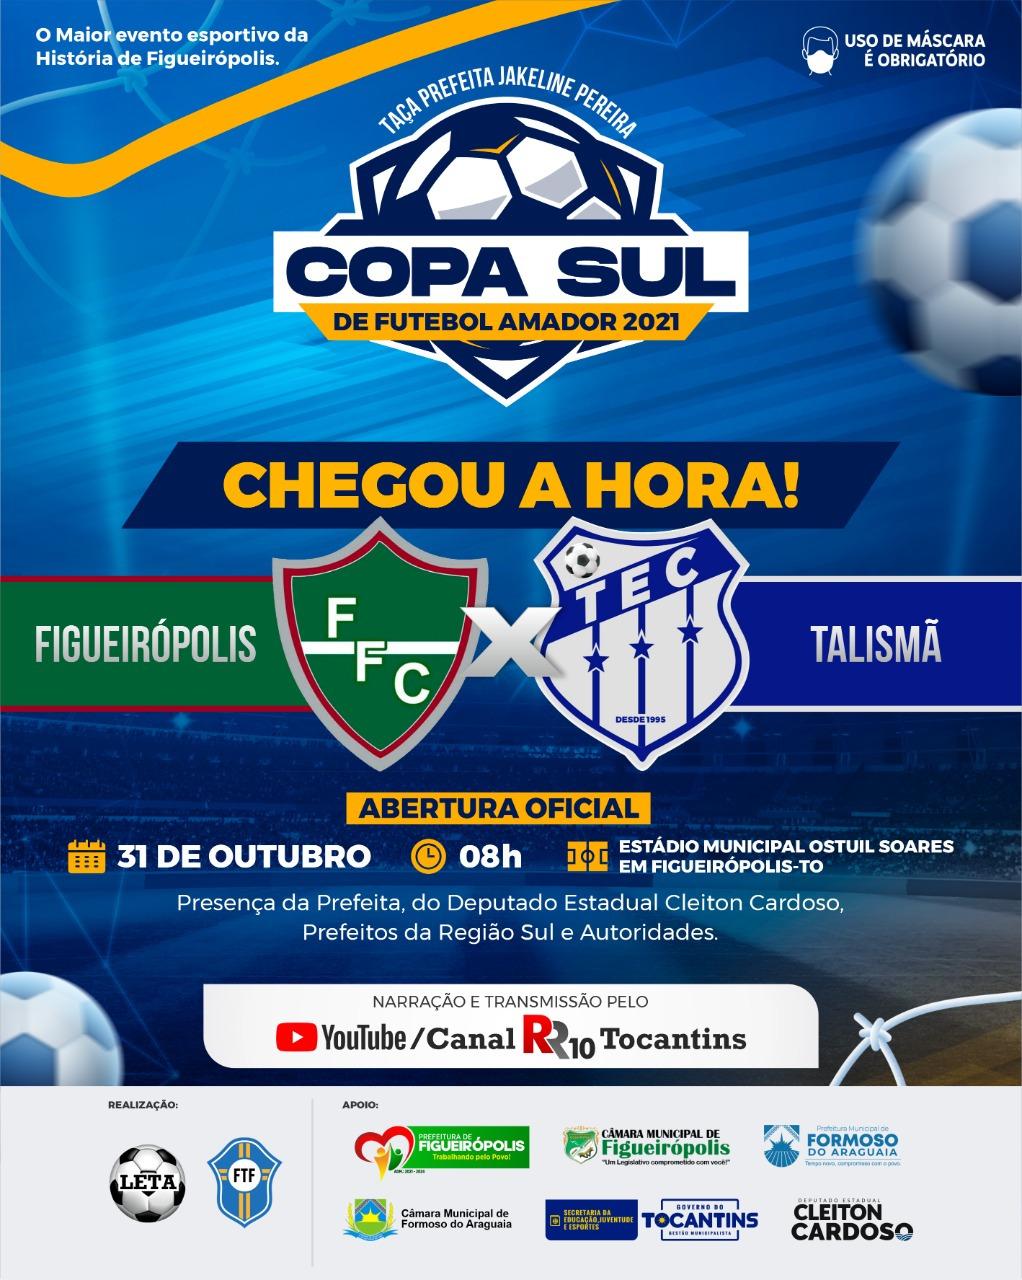 T.E.C. irá fazer sua estreia pela Copa Sul de Futebol Amador neste Domingo as 08:45 em Figueirópolis